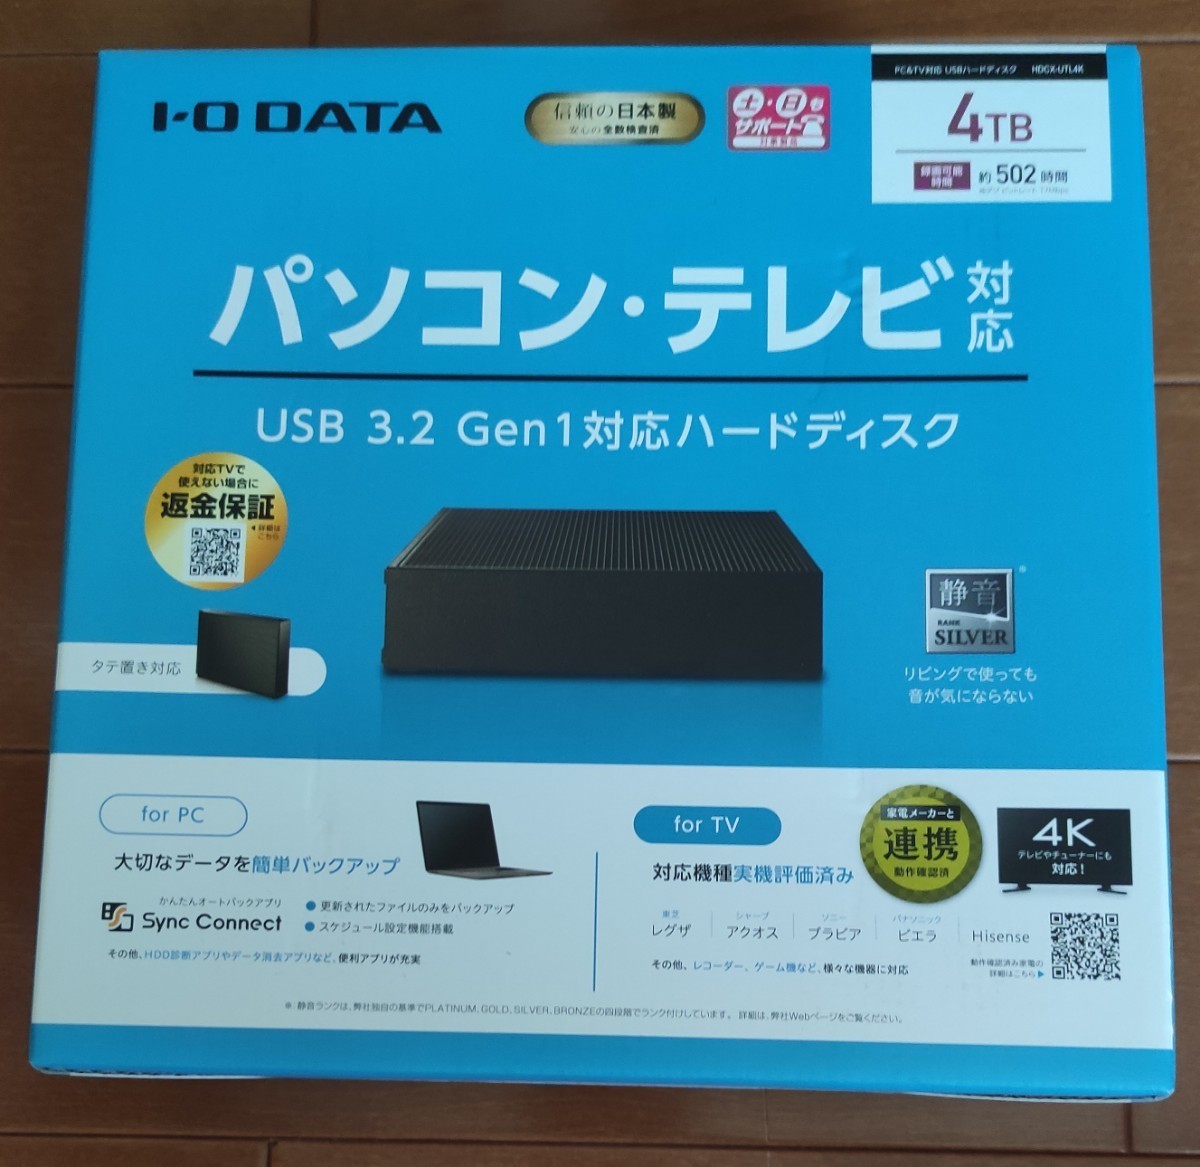 新品未開封品 4TB 外付けHDD 外付けハードディスク アイオーデータ I-O DATA